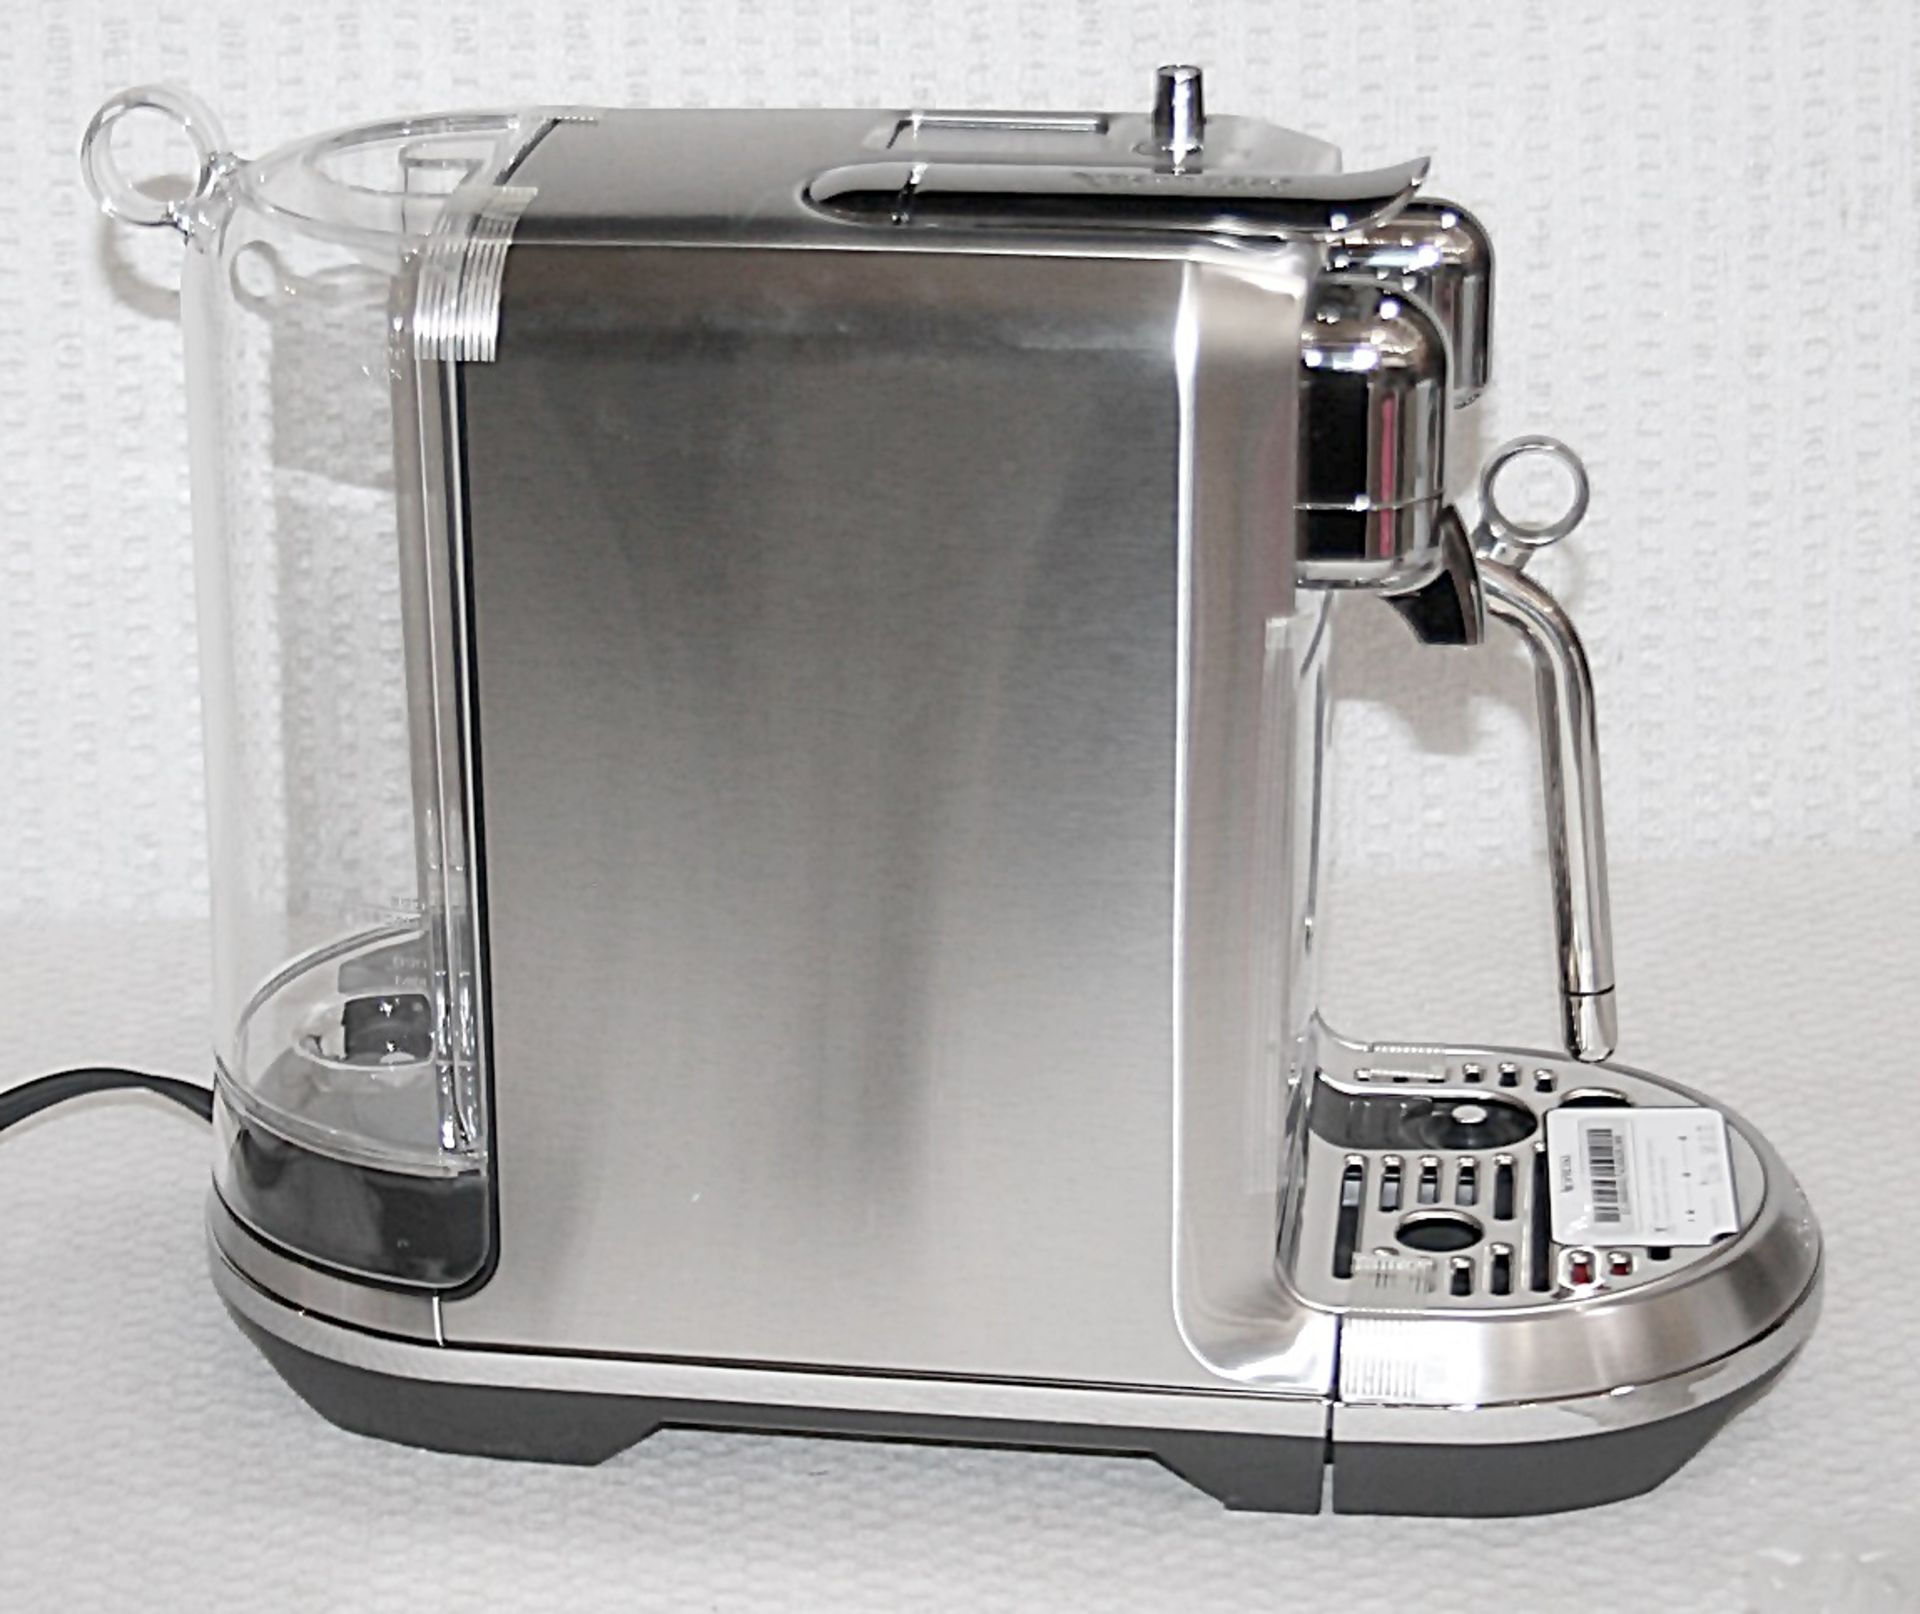 1 x NESPRESSO 'Creatista Plus' Coffee Machine In Silver - Original Price £479.95 - Boxed Stock - Image 6 of 18